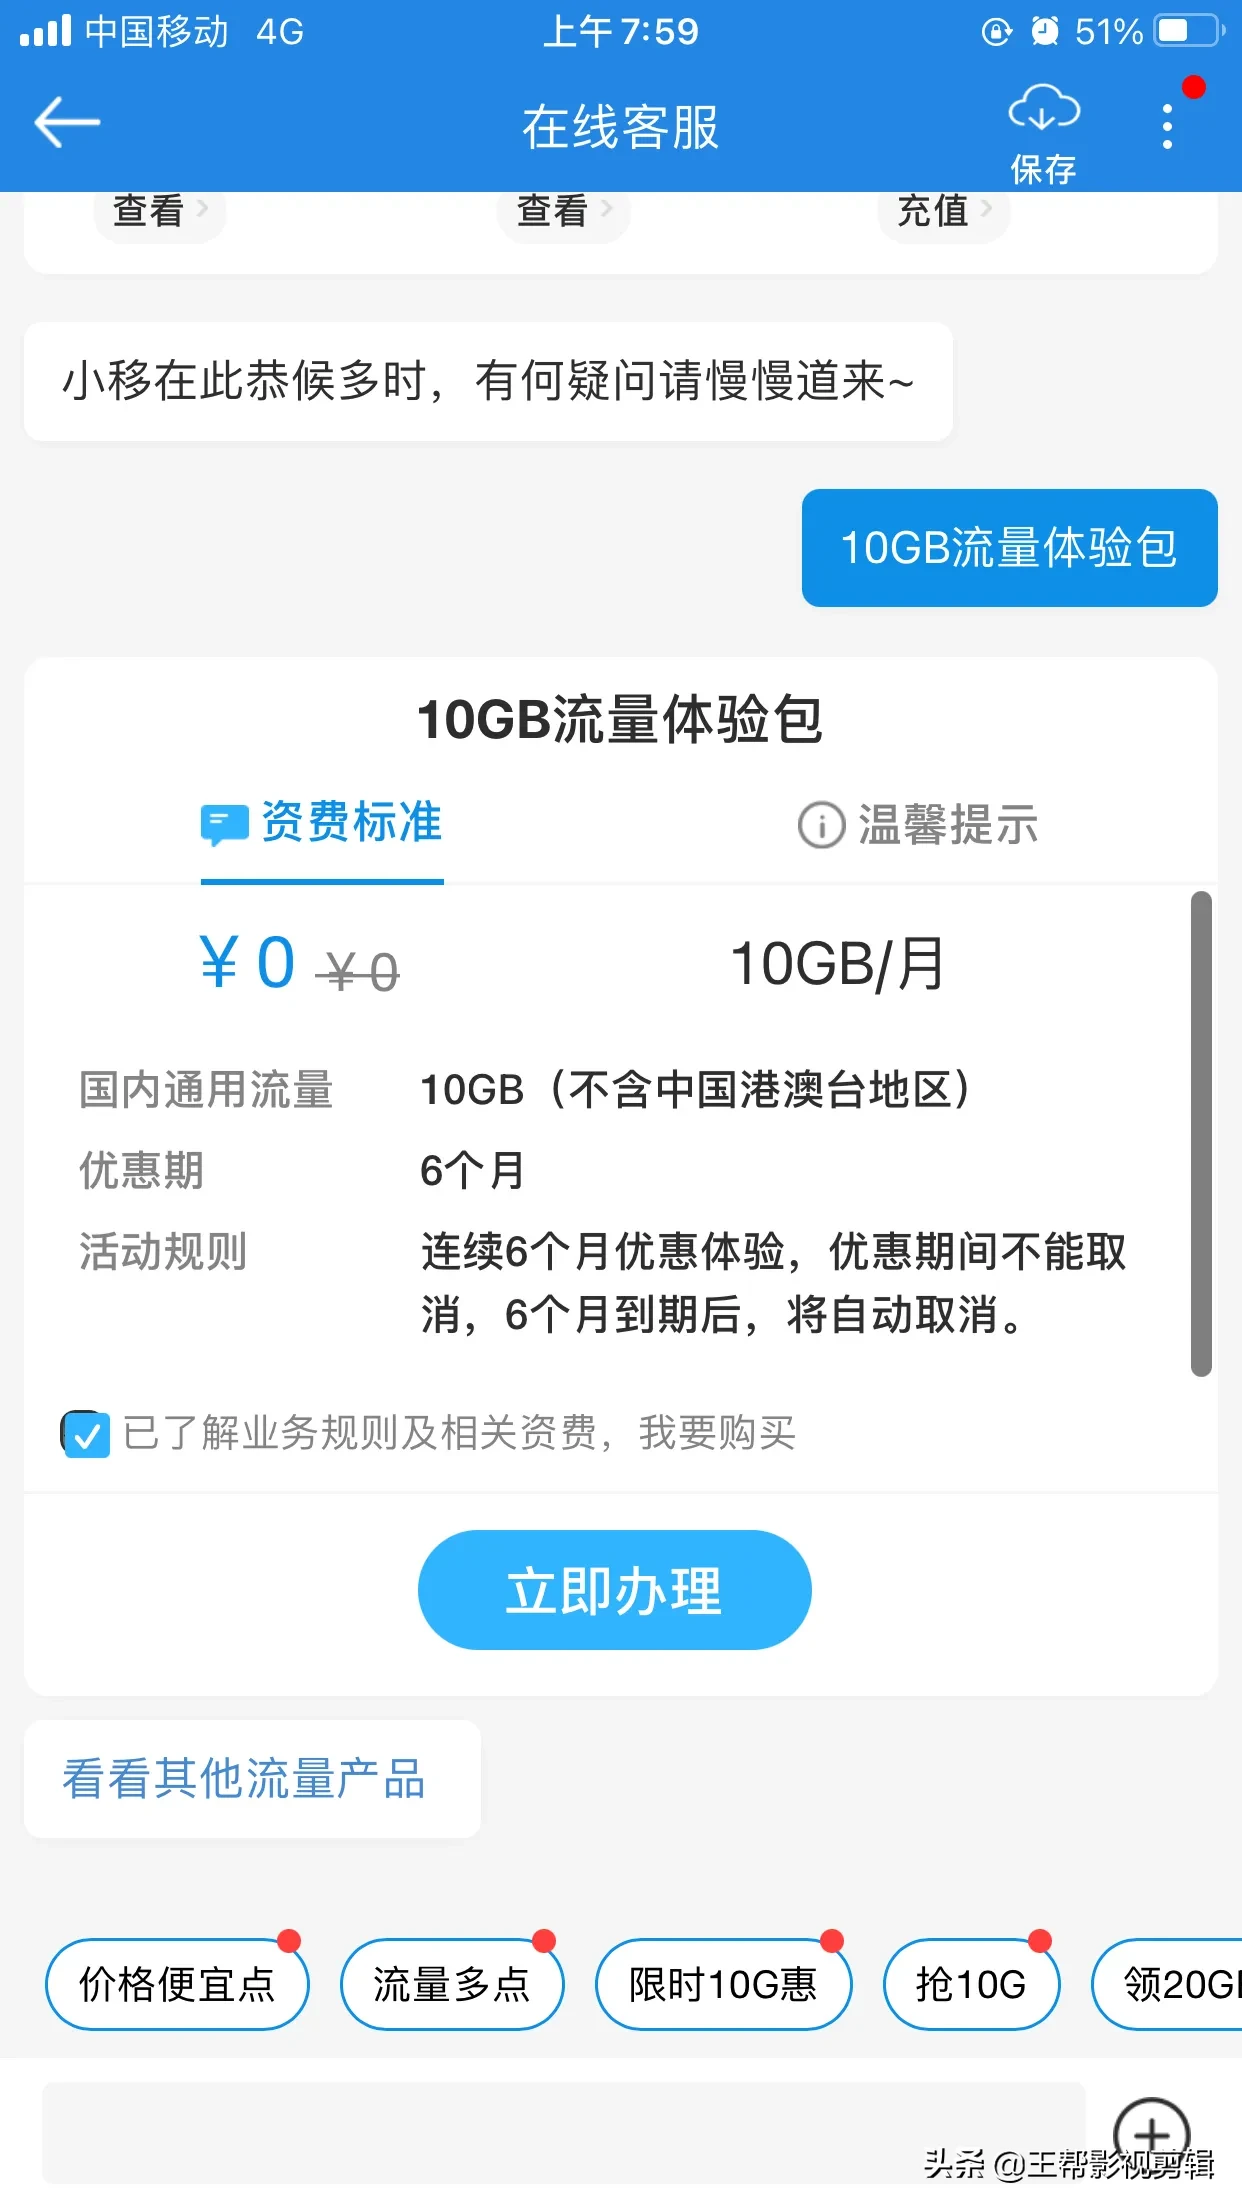 中国移动免费半年流量申请入口:5G流量包50GB/每月10GB